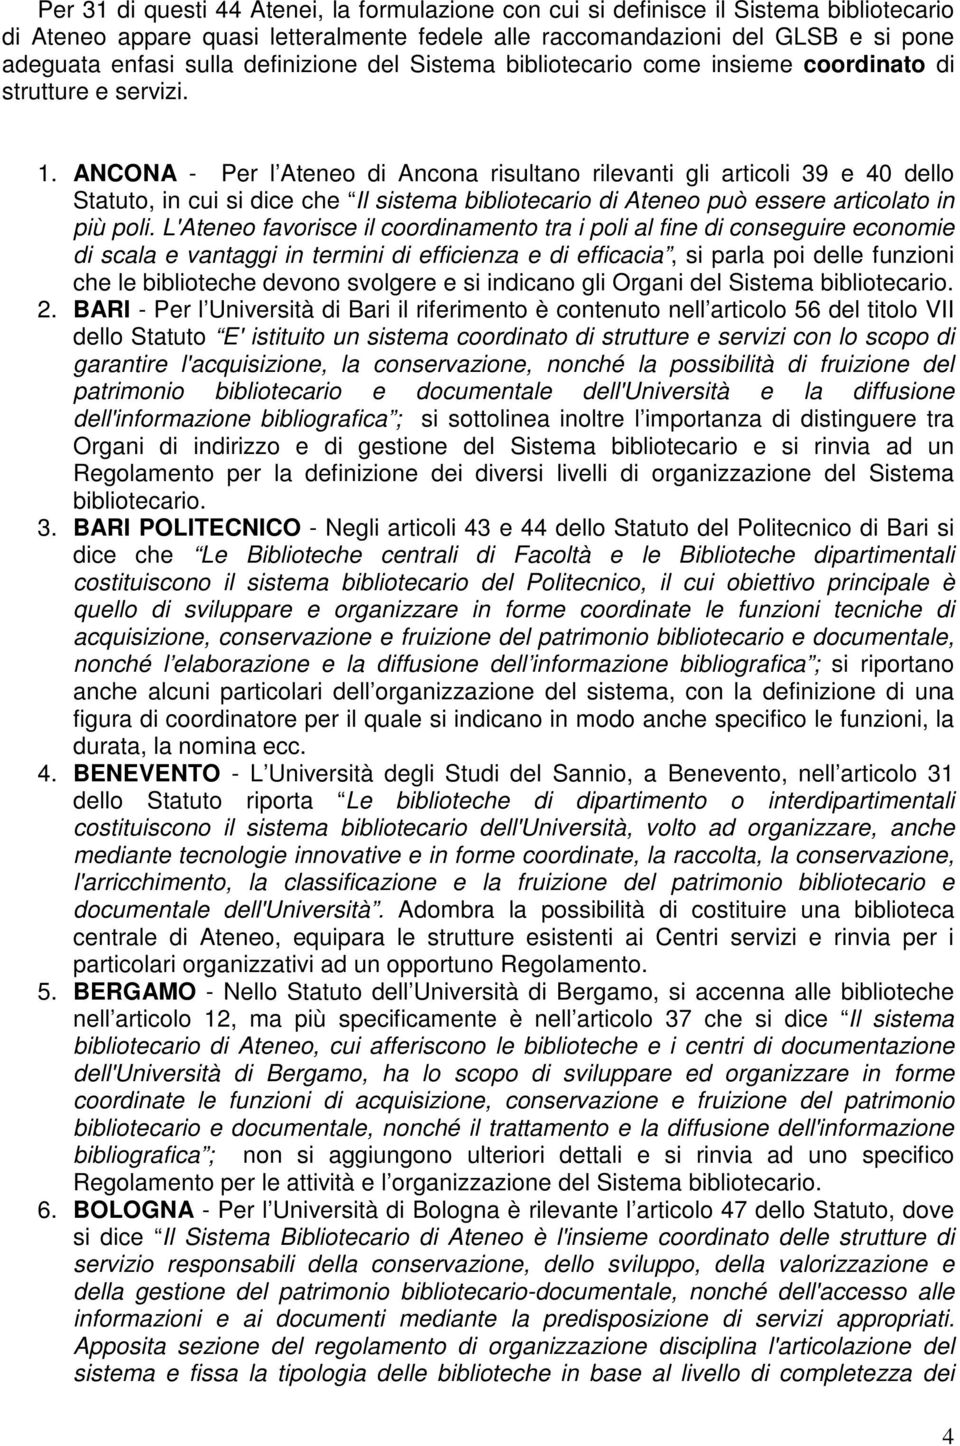 ANCONA - Per l di Ancona risultano rilevanti gli articoli 39 e 40 dello, in cui dice che Il stema bibliotecario di può essere articolato in più poli.